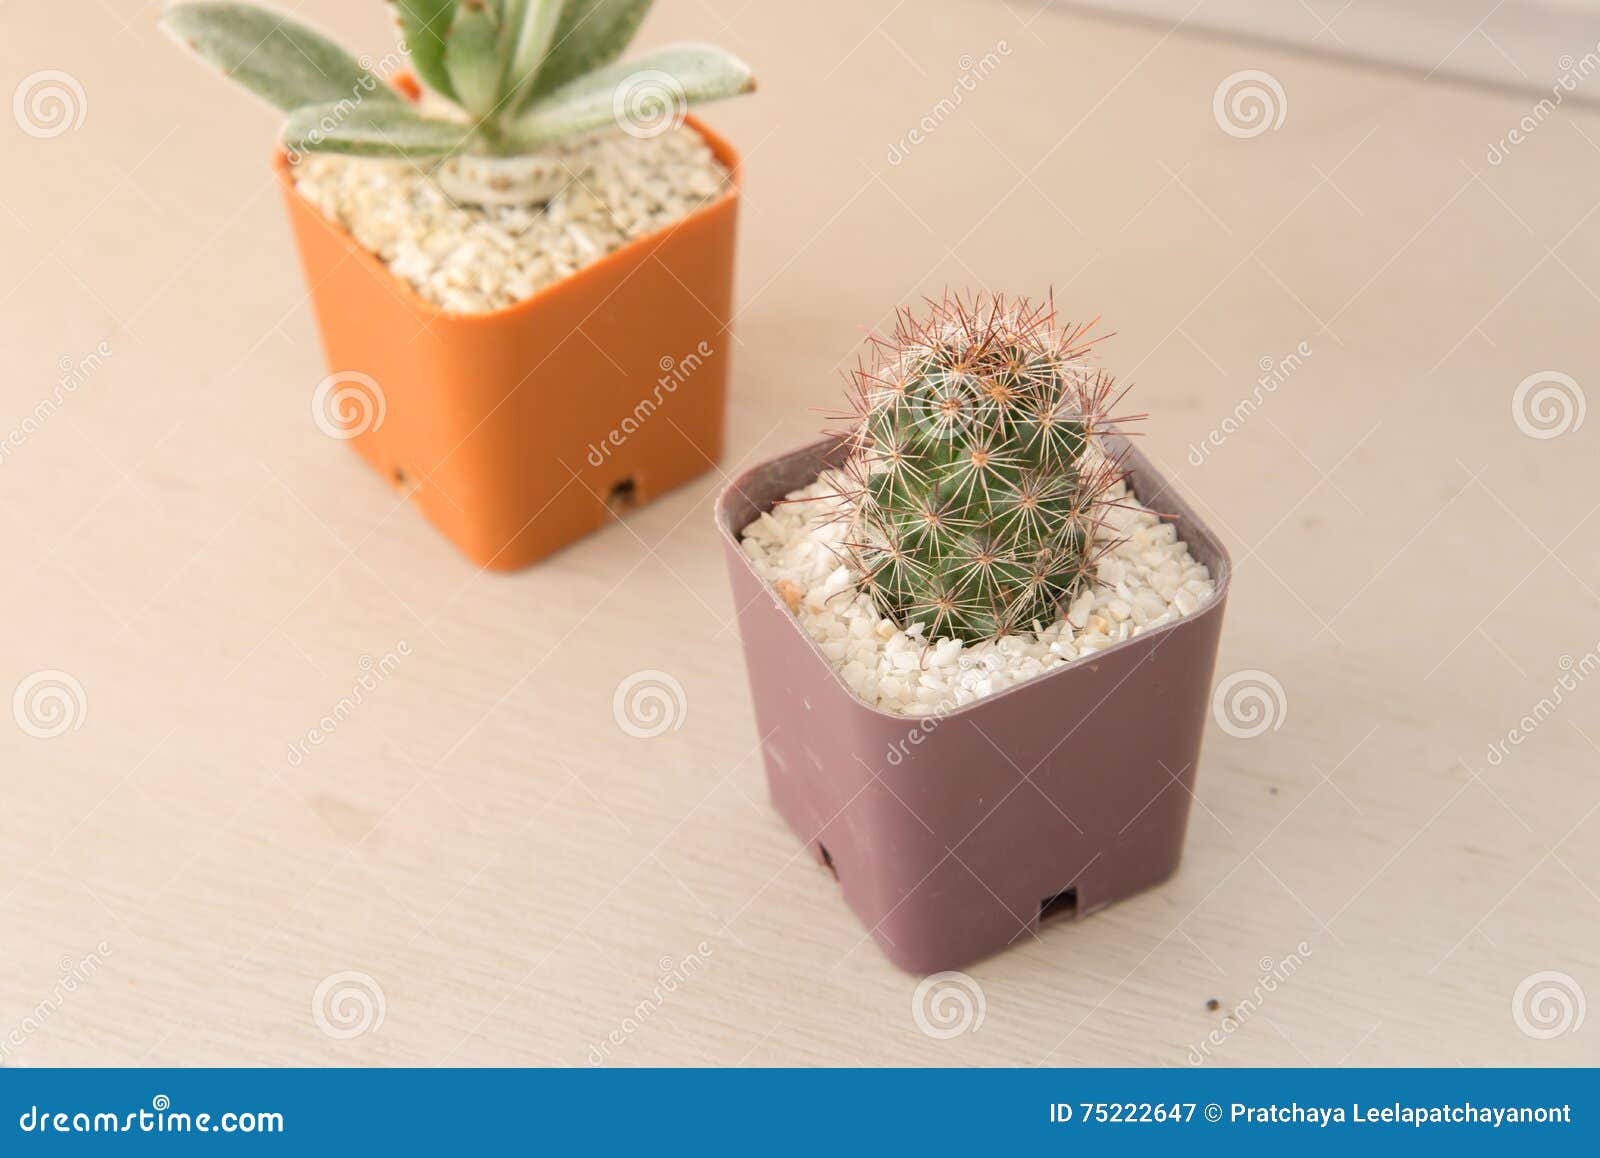 vaso Villano eximir Pequeña Planta Del Cactus En Maceta Imagen de archivo - Imagen de madera,  objeto: 75222647